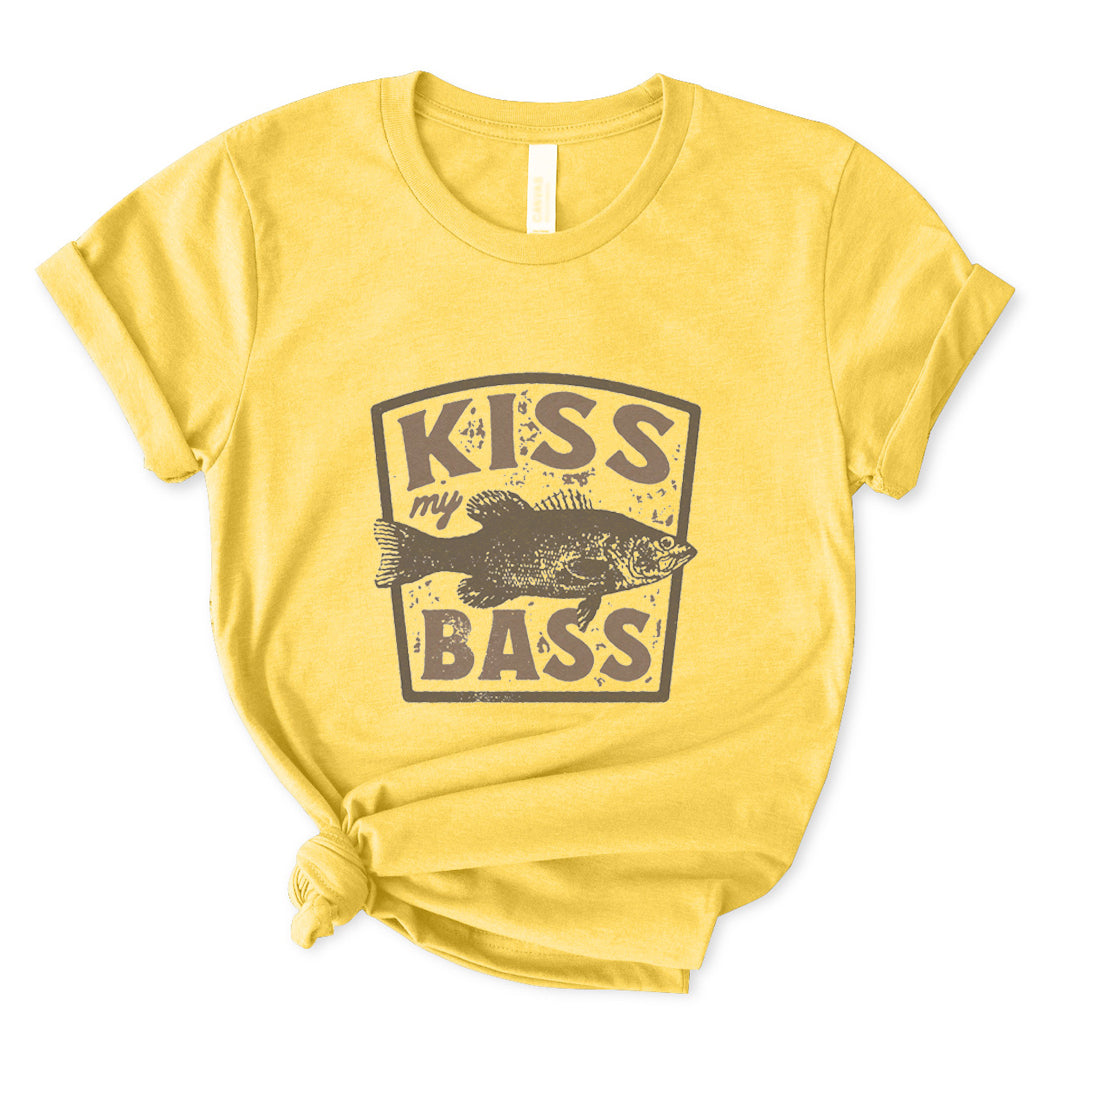 Kiss My Bass T-Shirt for Women